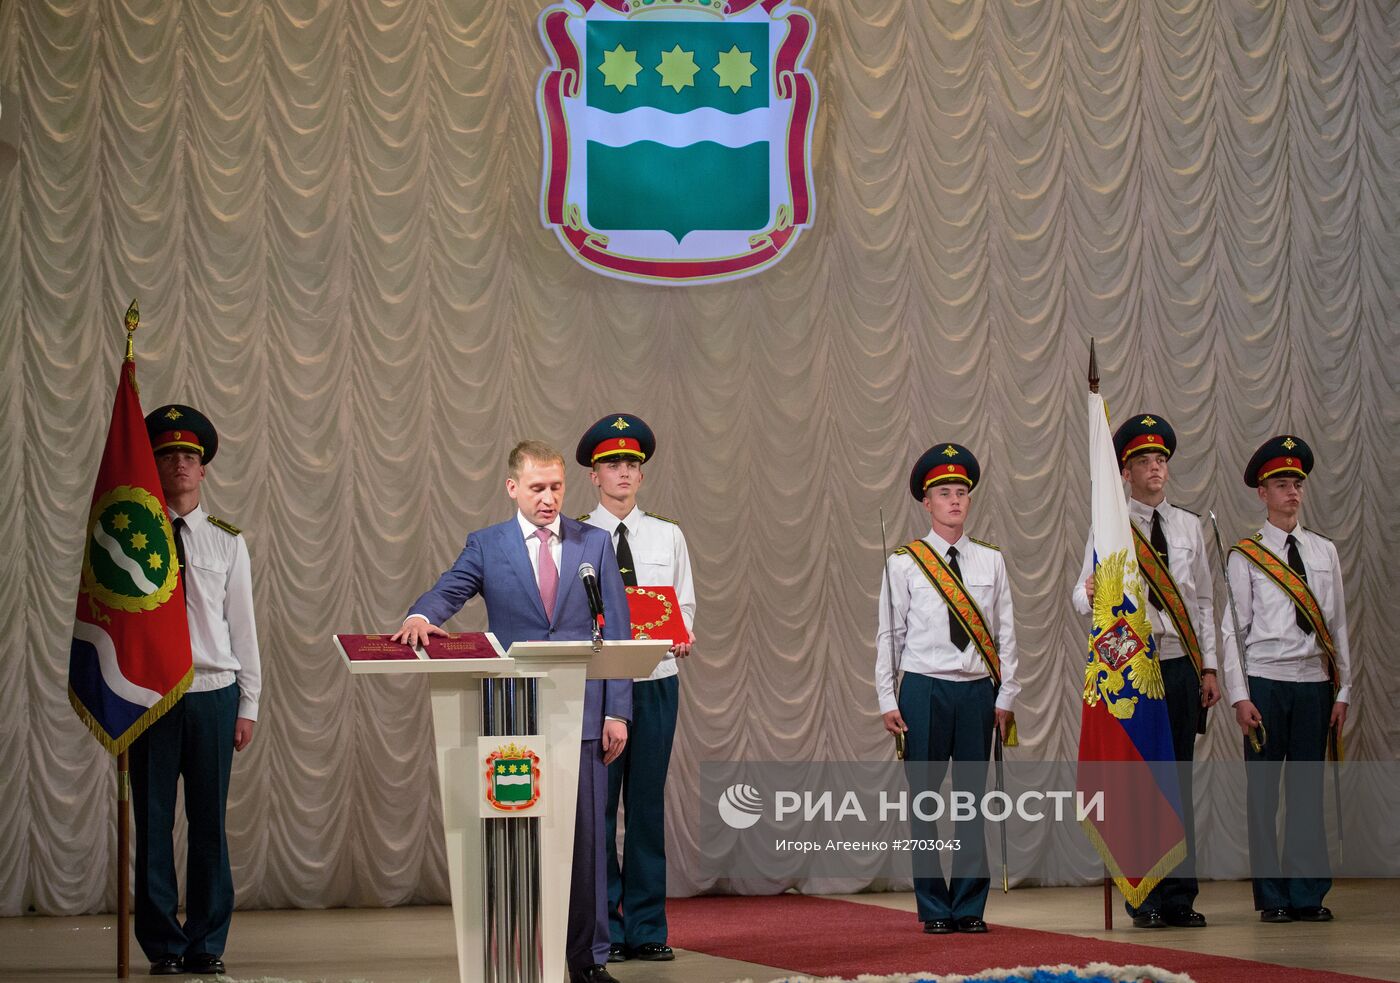 Инаугурация избранного губернатора Амурской области Козлова прошла в Благовещенске